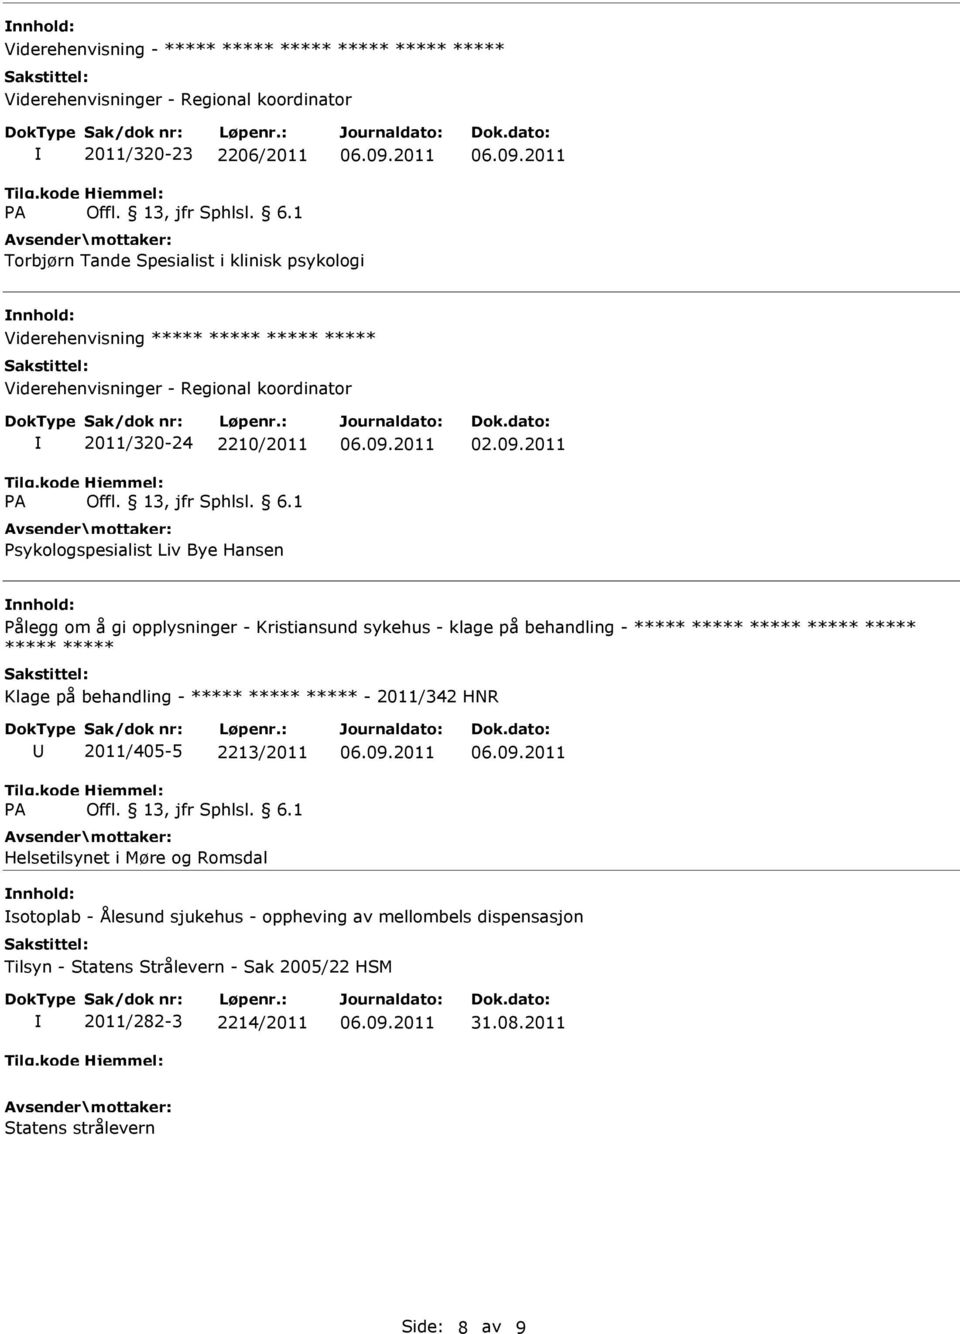 2011 Pålegg om å gi opplysninger - Kristiansund sykehus - klage på behandling - Klage på behandling - - 2011/342 HNR 2011/405-5 2213/2011